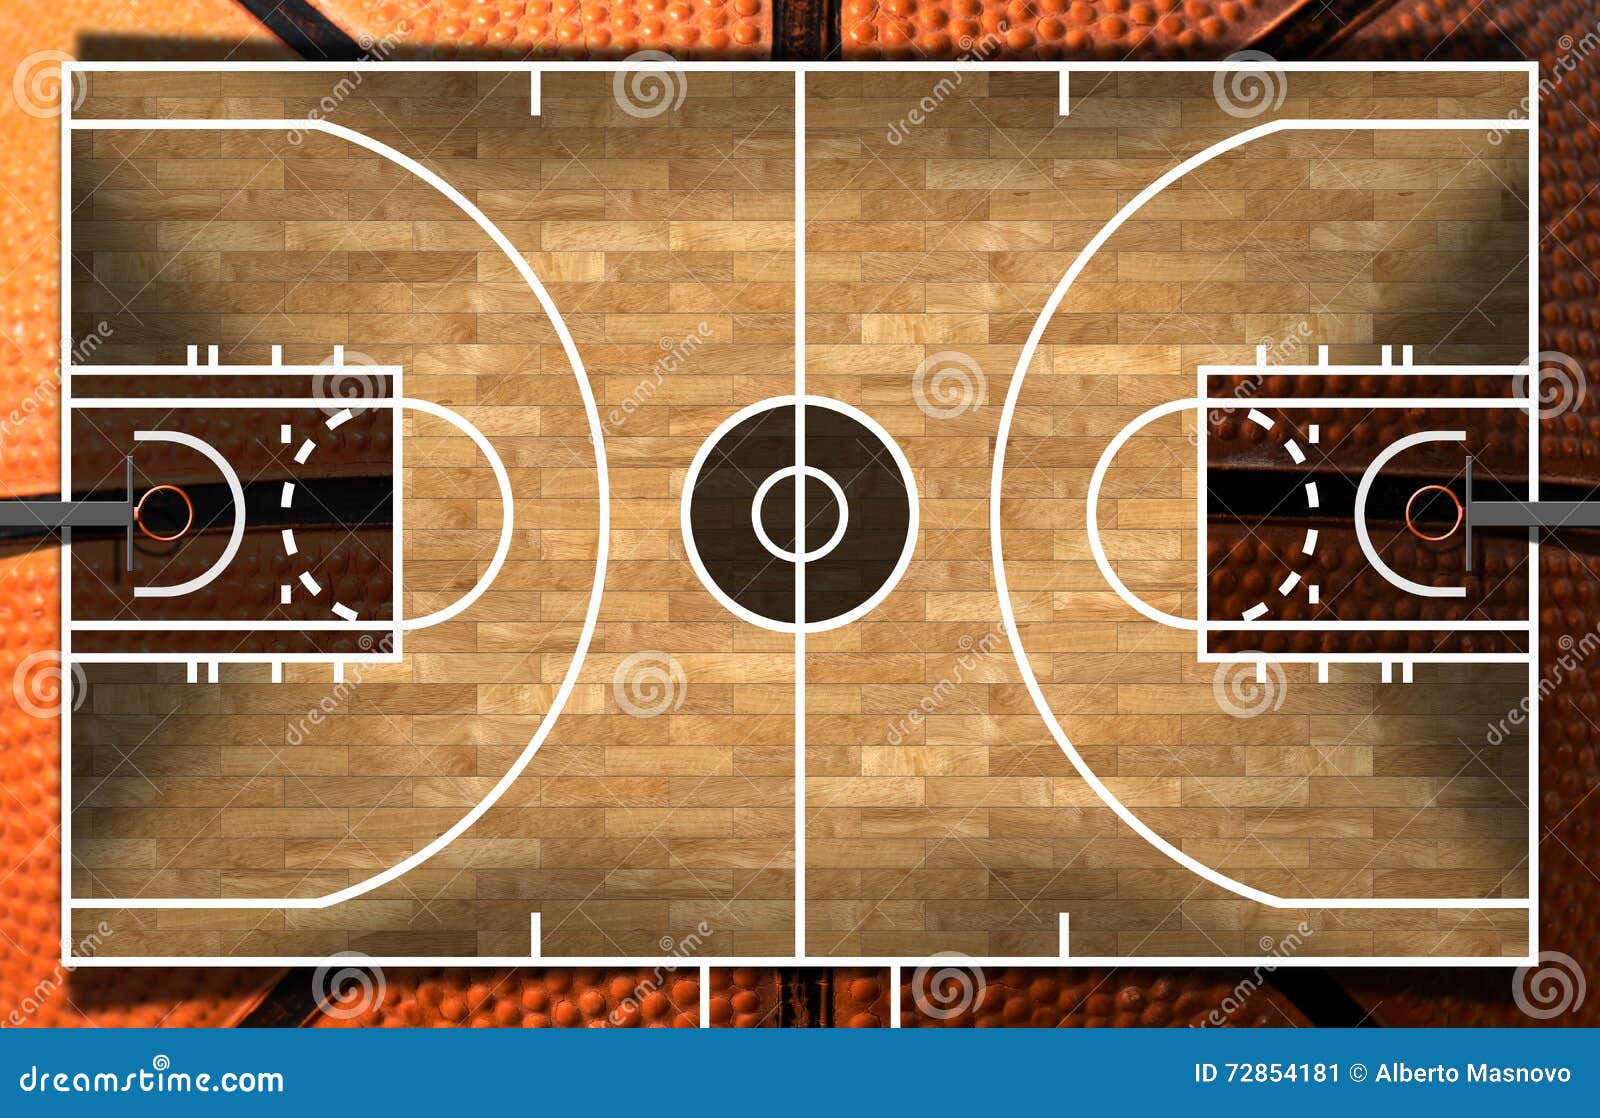 Terrain de basket ball : 82 528 images, photos de stock, objets 3D et  images vectorielles